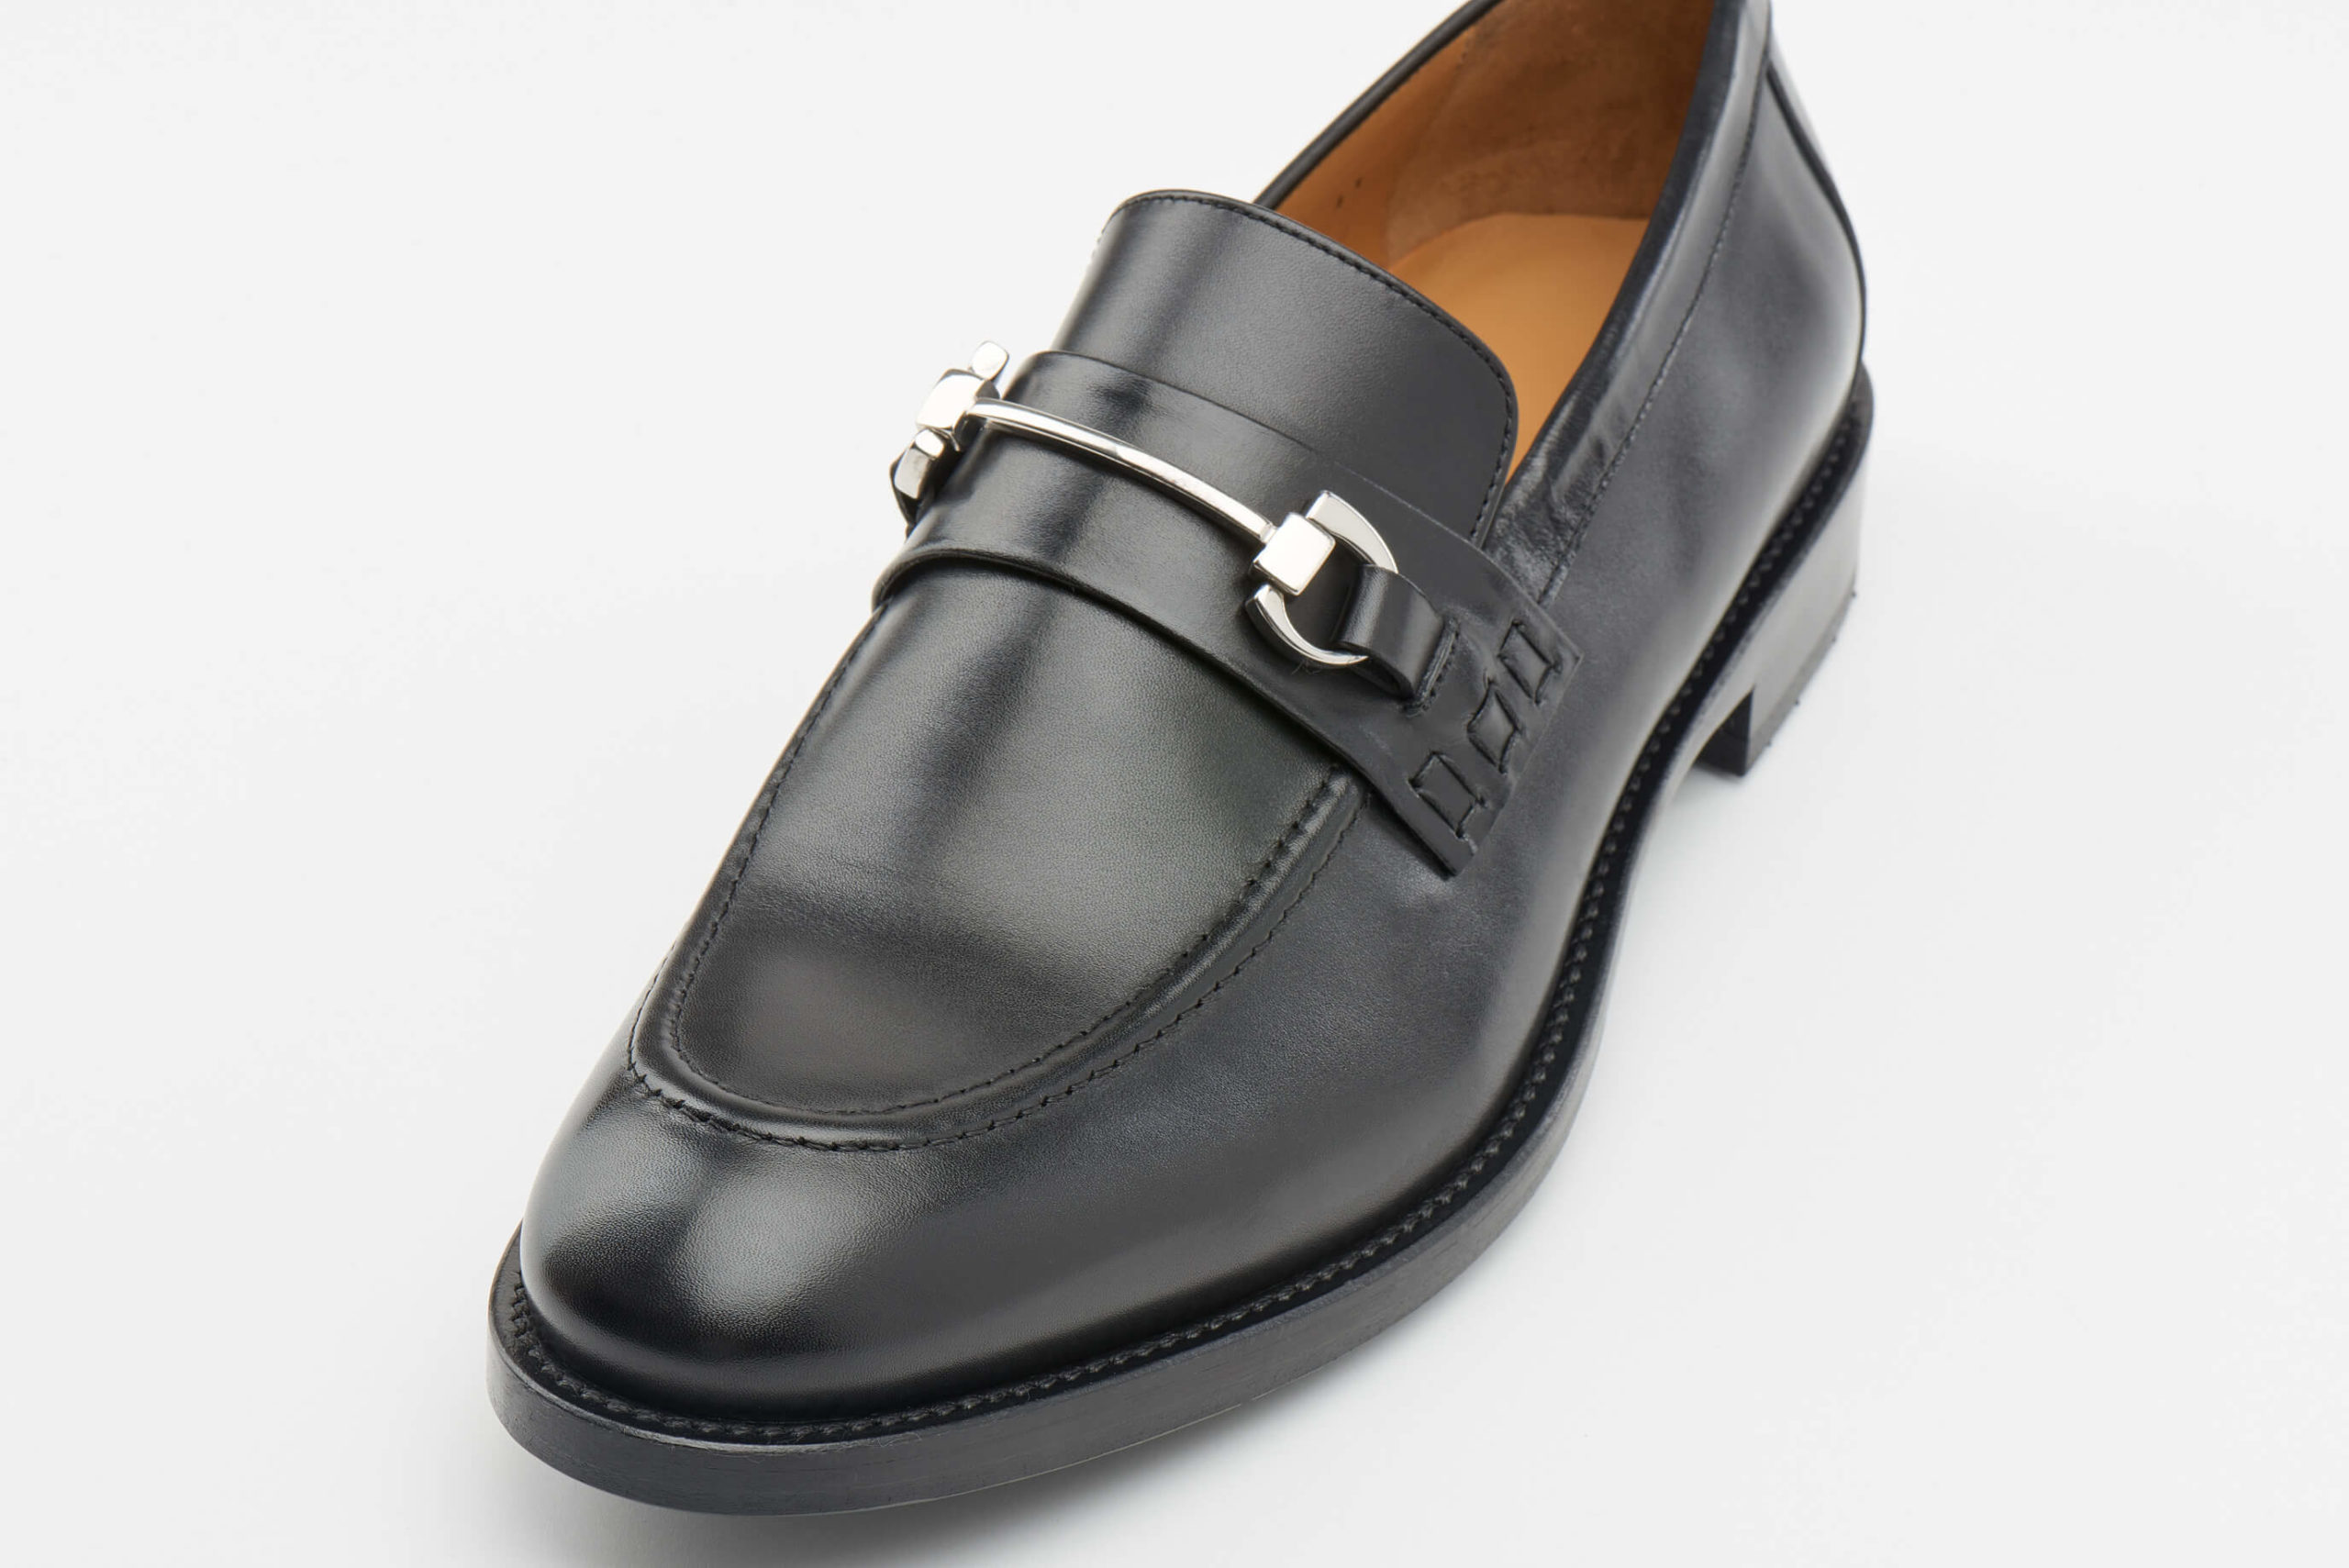 Luis Onofre Portuguese Shoes FW22 – HS0805_01 – NITRO BLACK-5